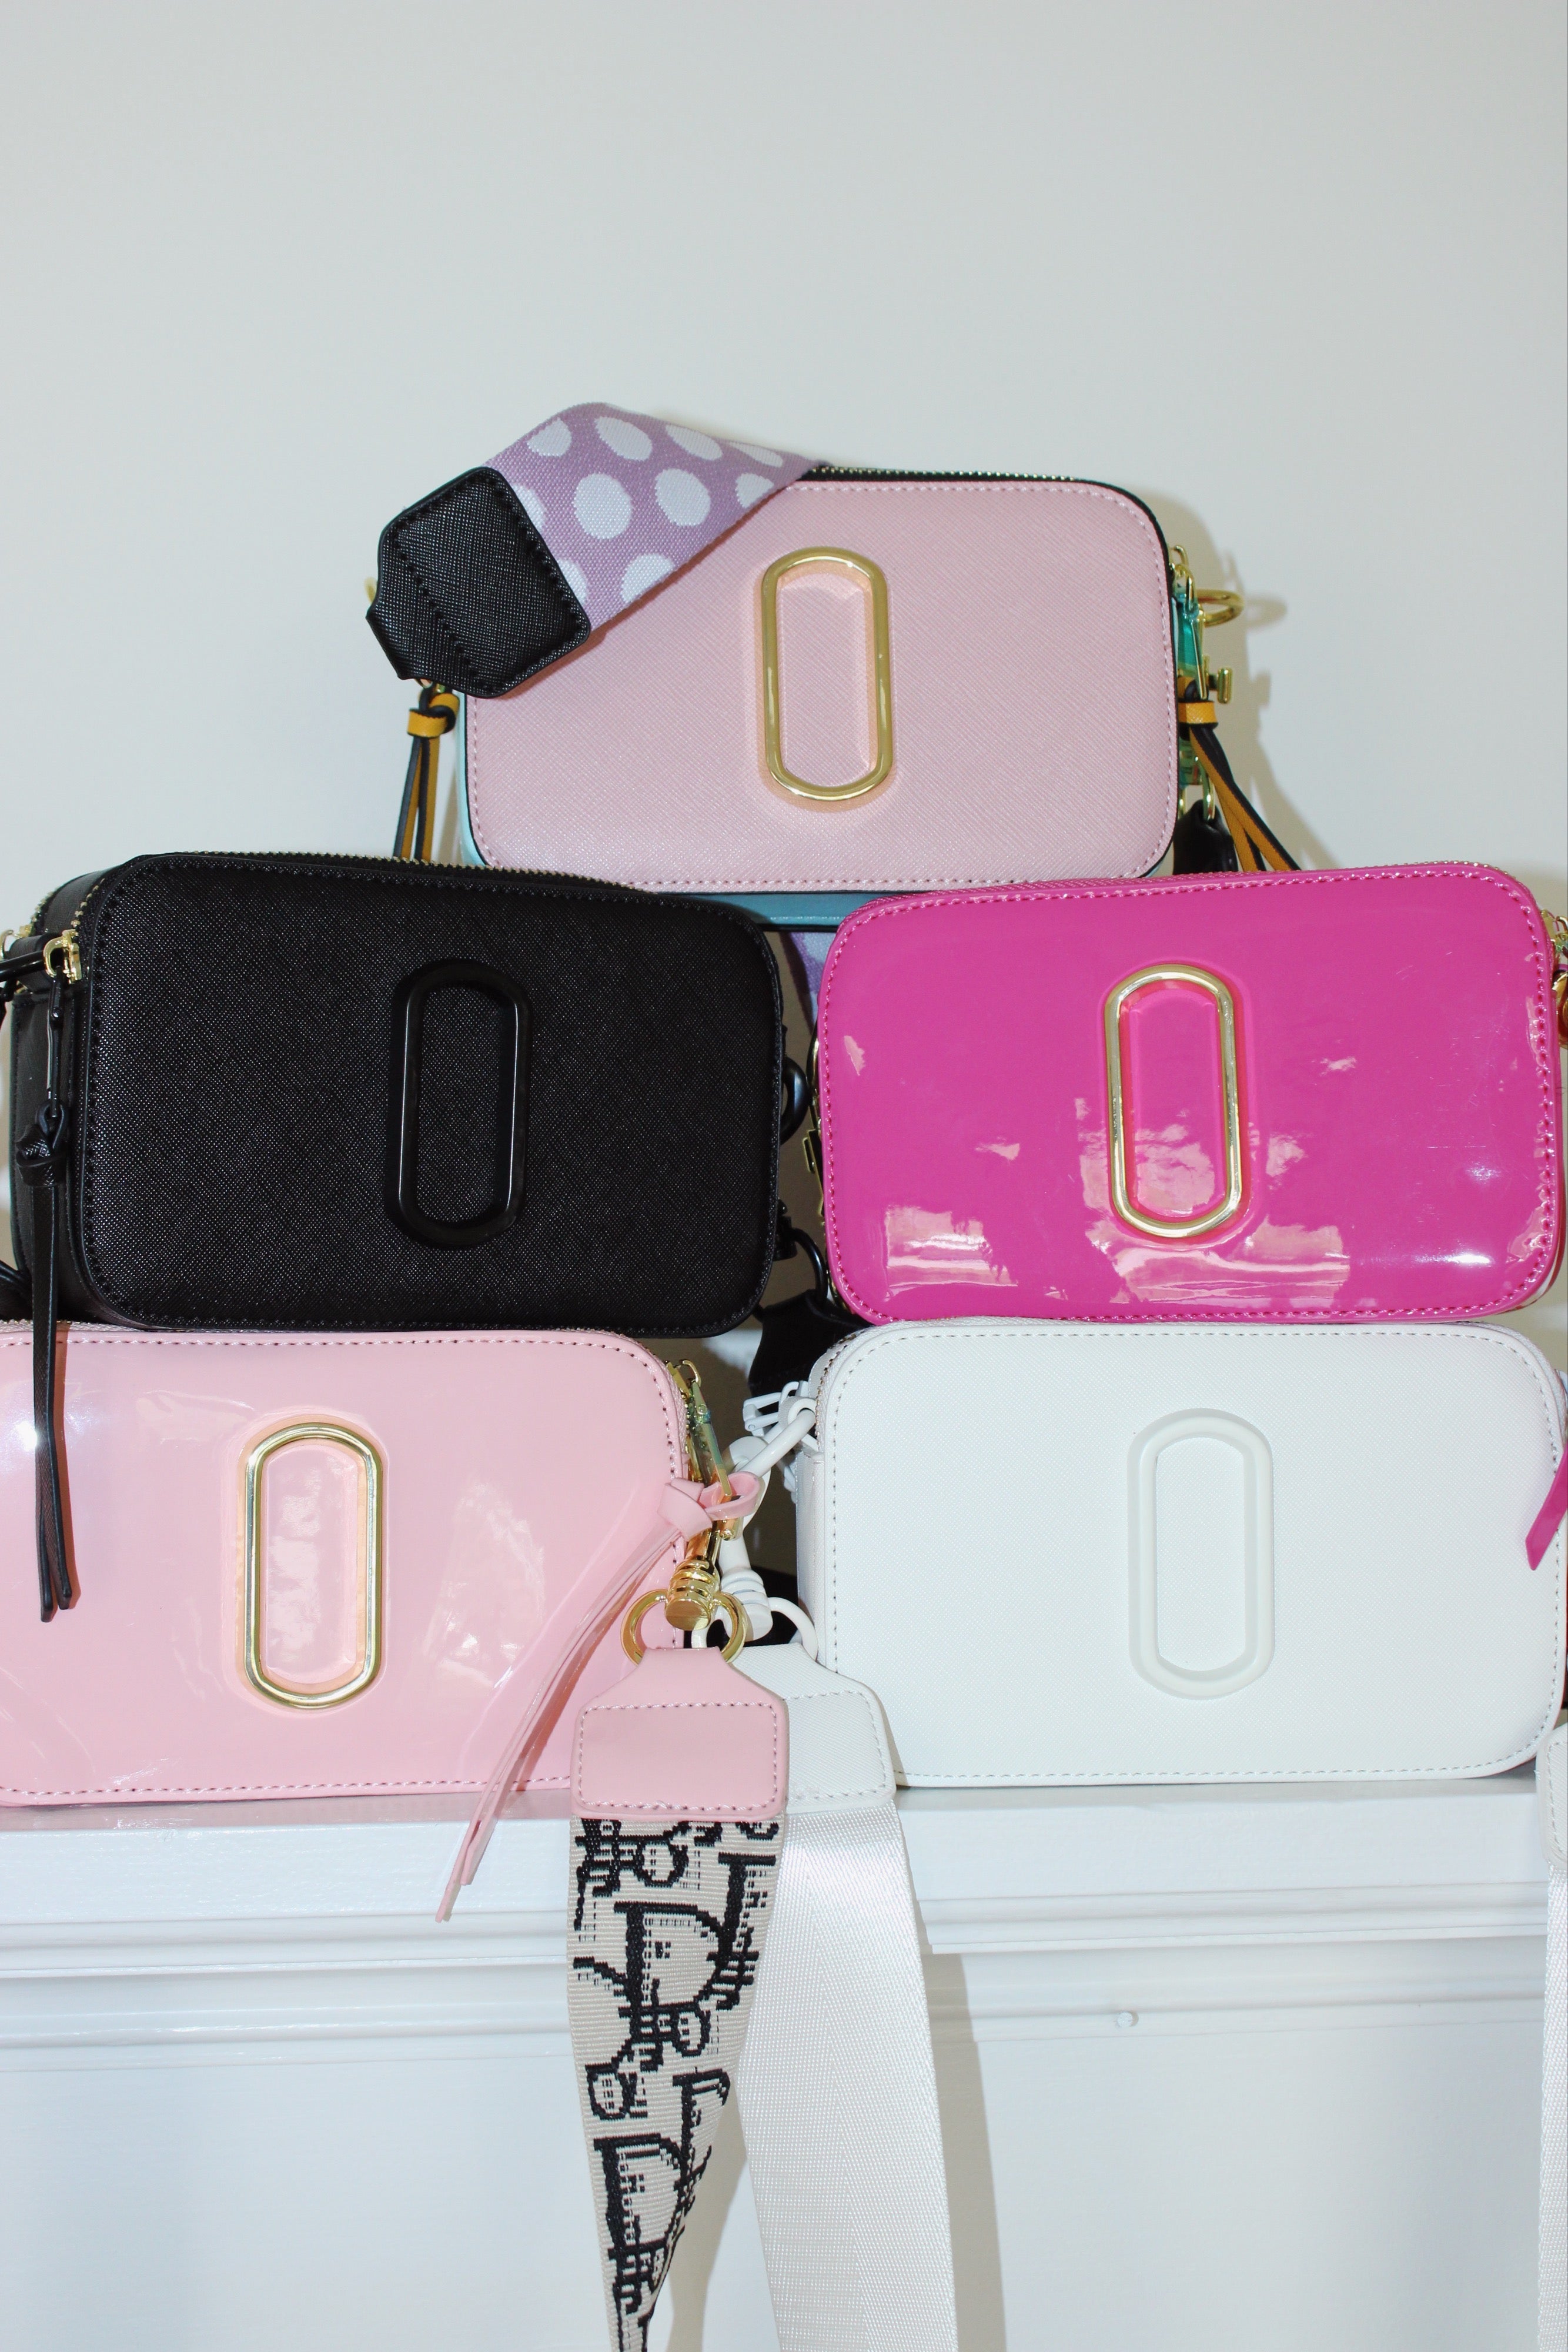 Glossy Bag - Designer Strap - Hot Pink & Light Pink